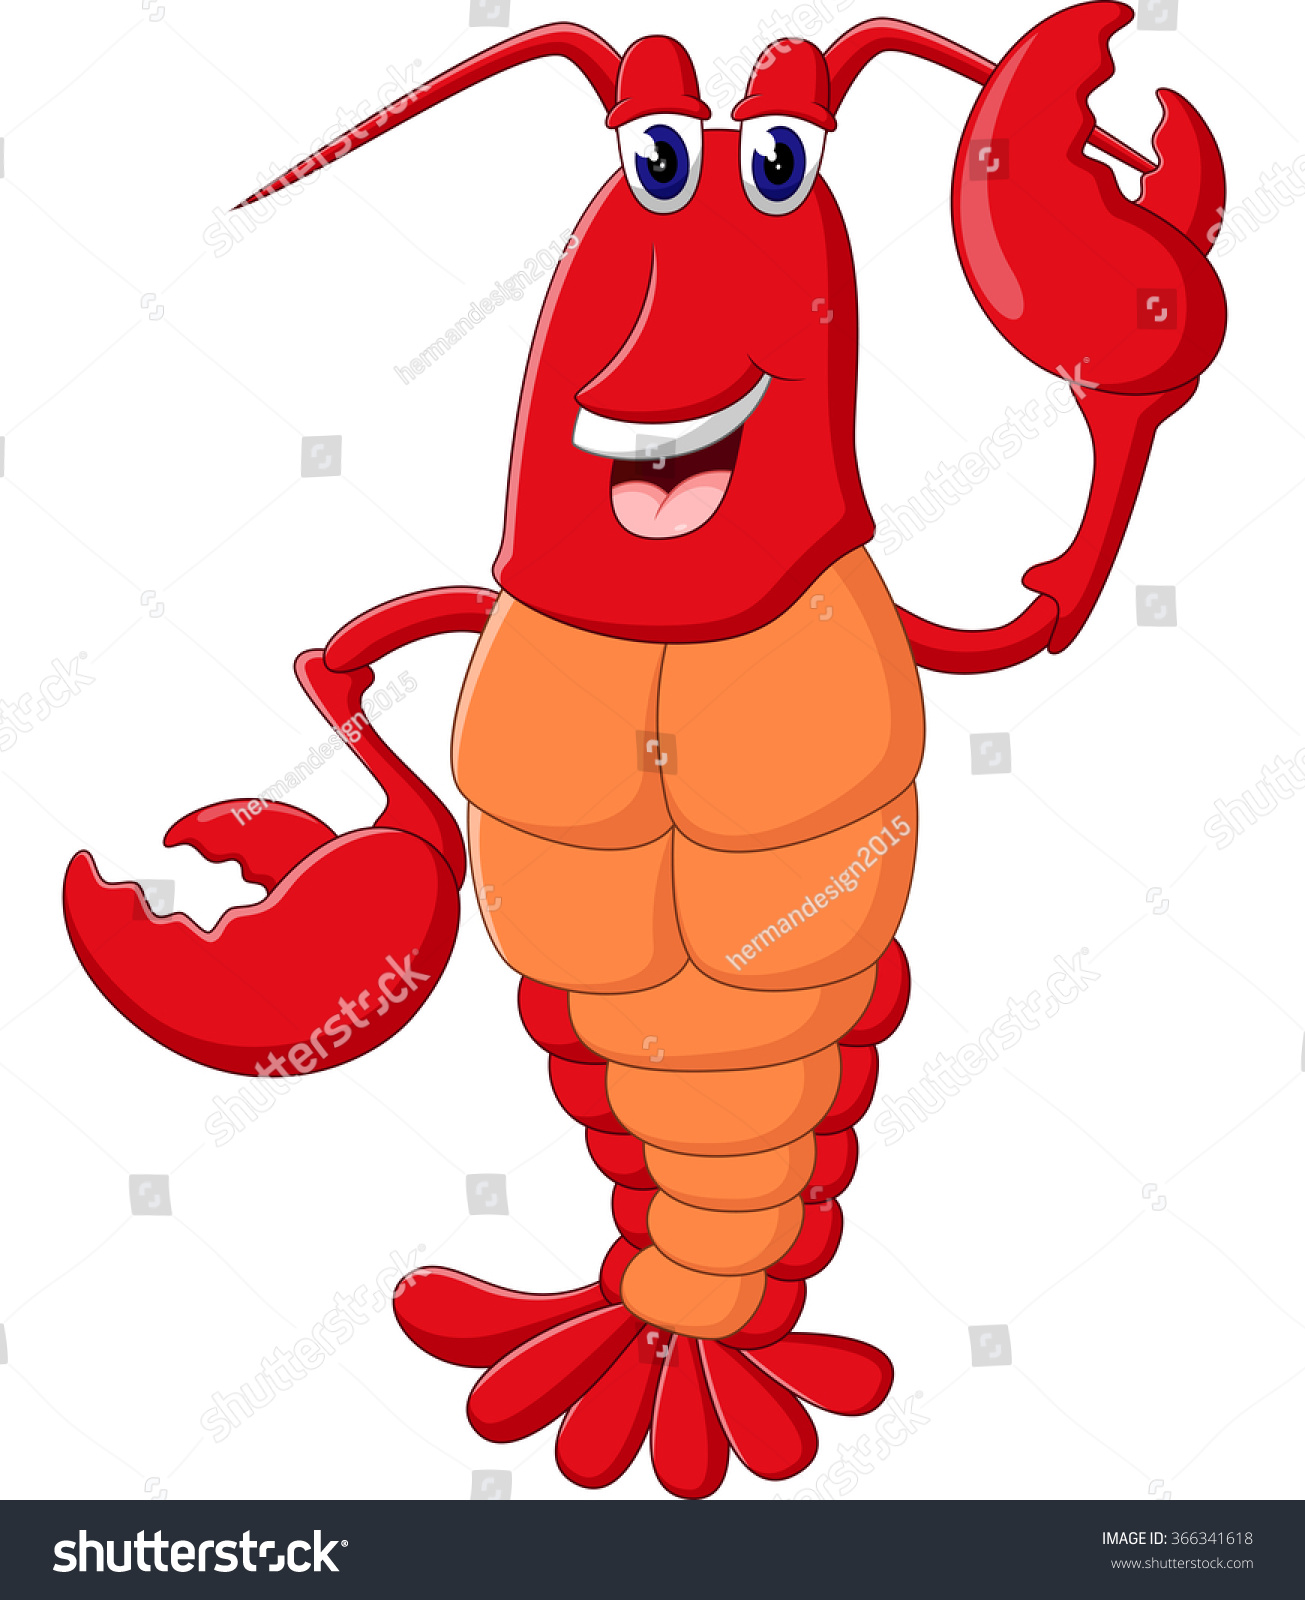 Illustration Cute Lobster Cartoon Stock Illustration 366341618 ...